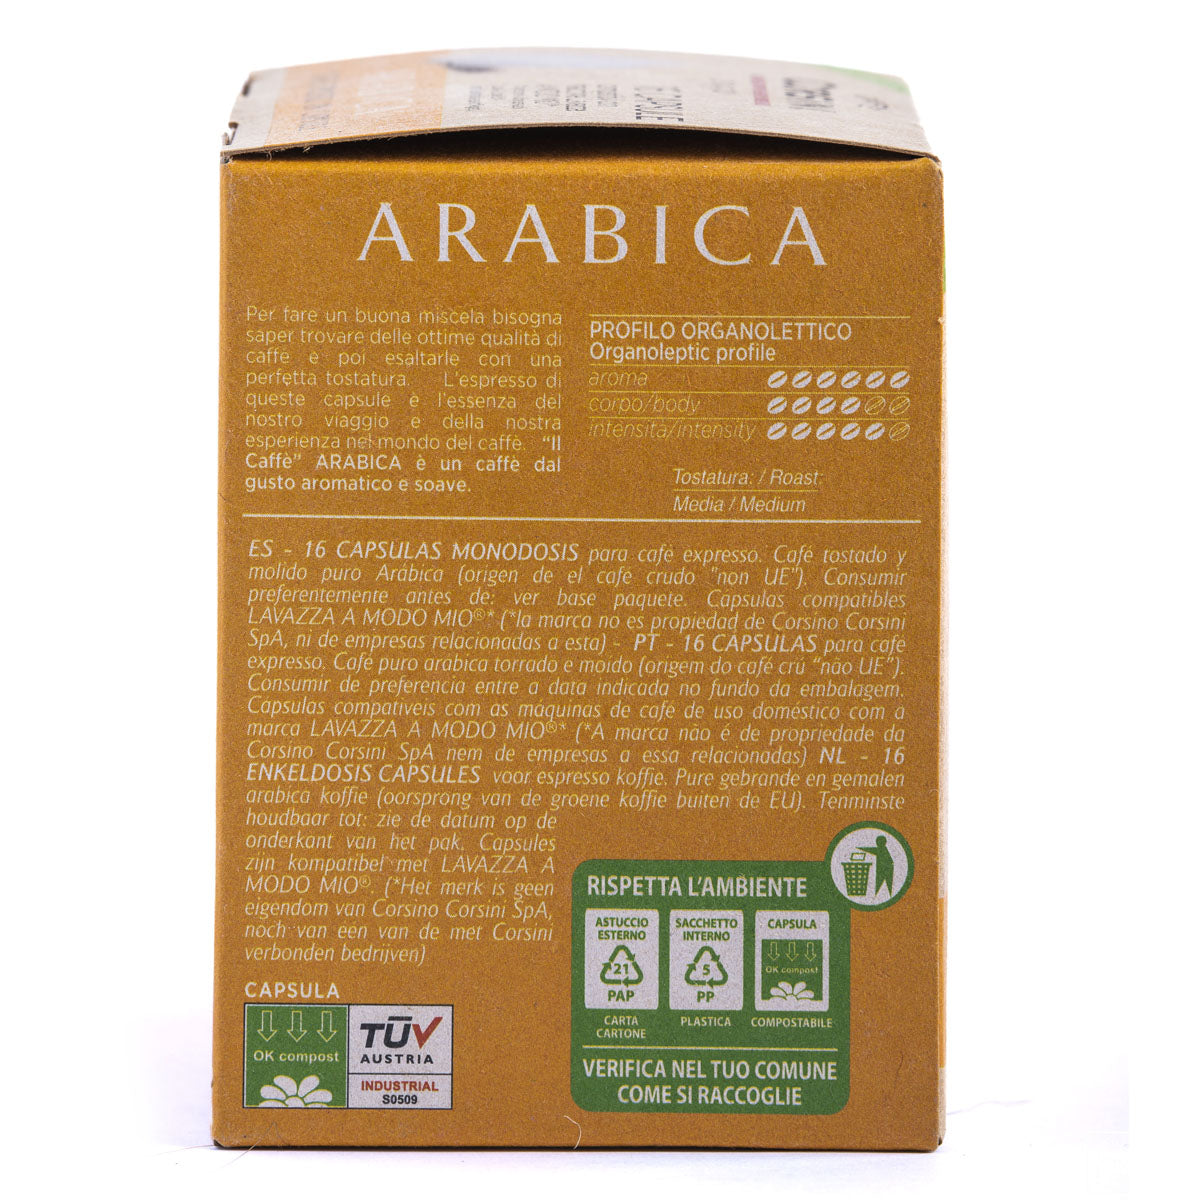 Compostable coffee capsules compatible with Lavazza®* A Modo Mio®* | Gran Riserva Arabica | 16 pieces